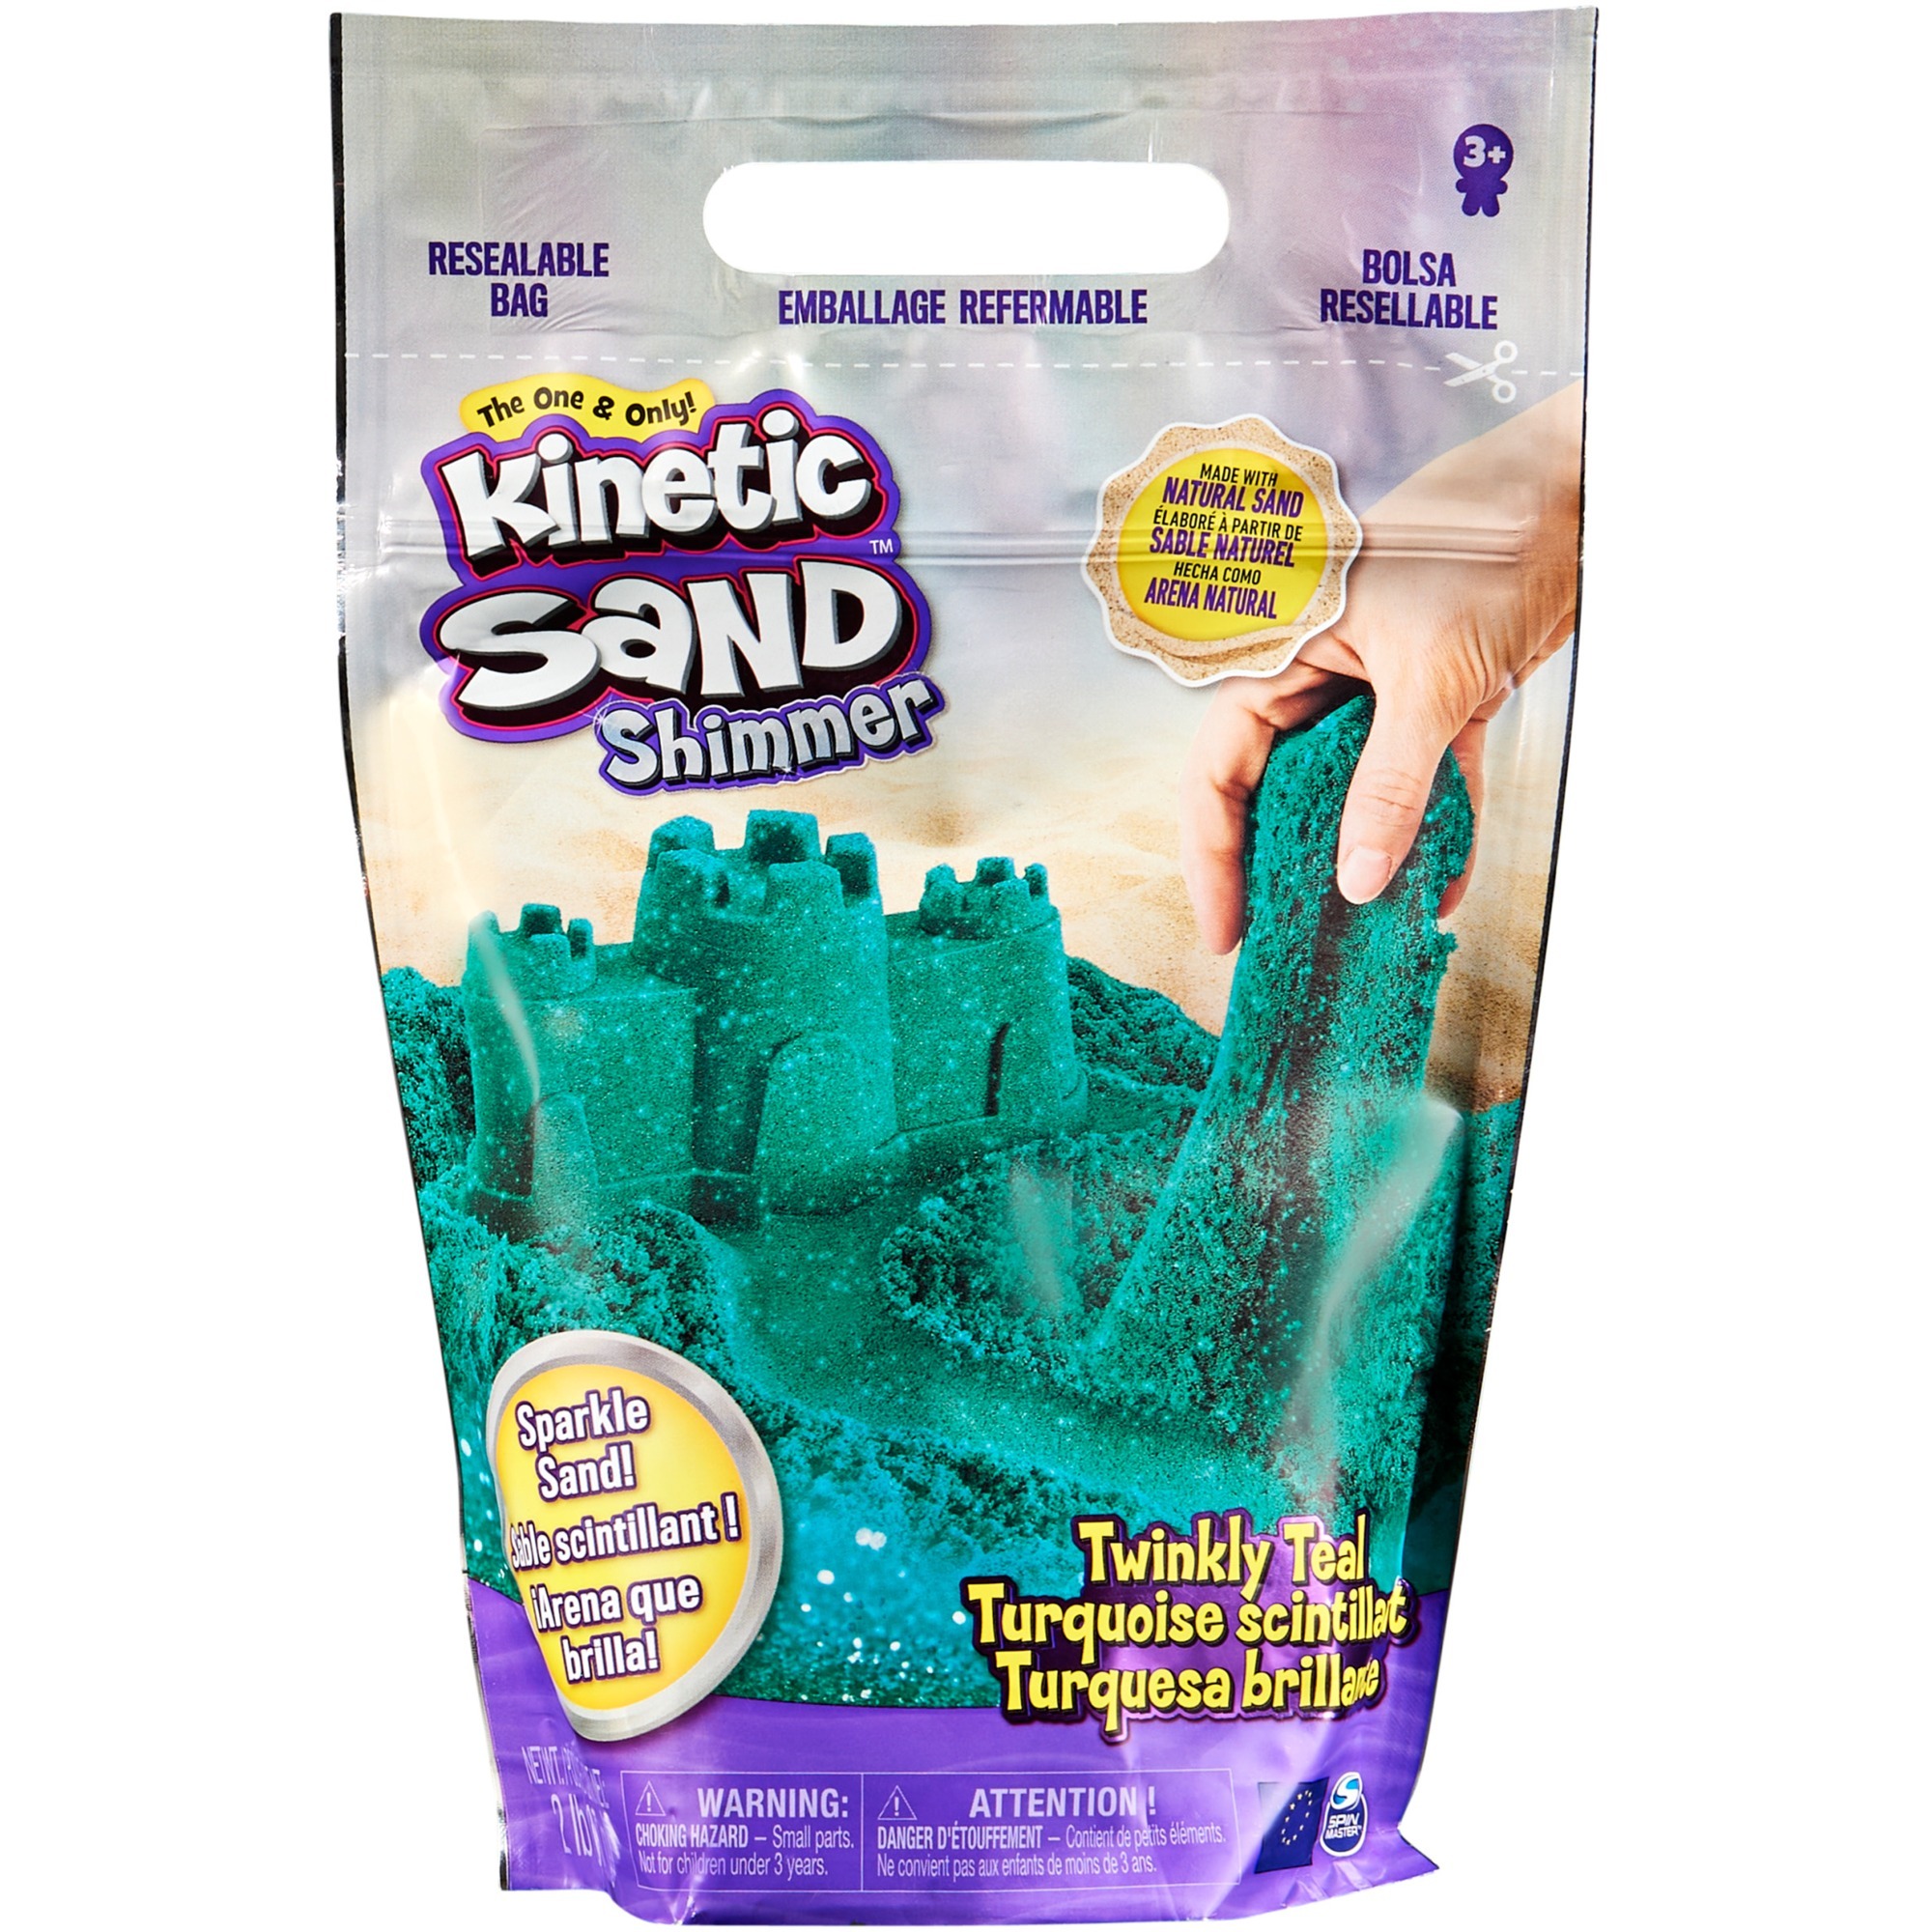 Image of Alternate - Kinetic Sand - Schimmersand Petrol, Spielsand online einkaufen bei Alternate